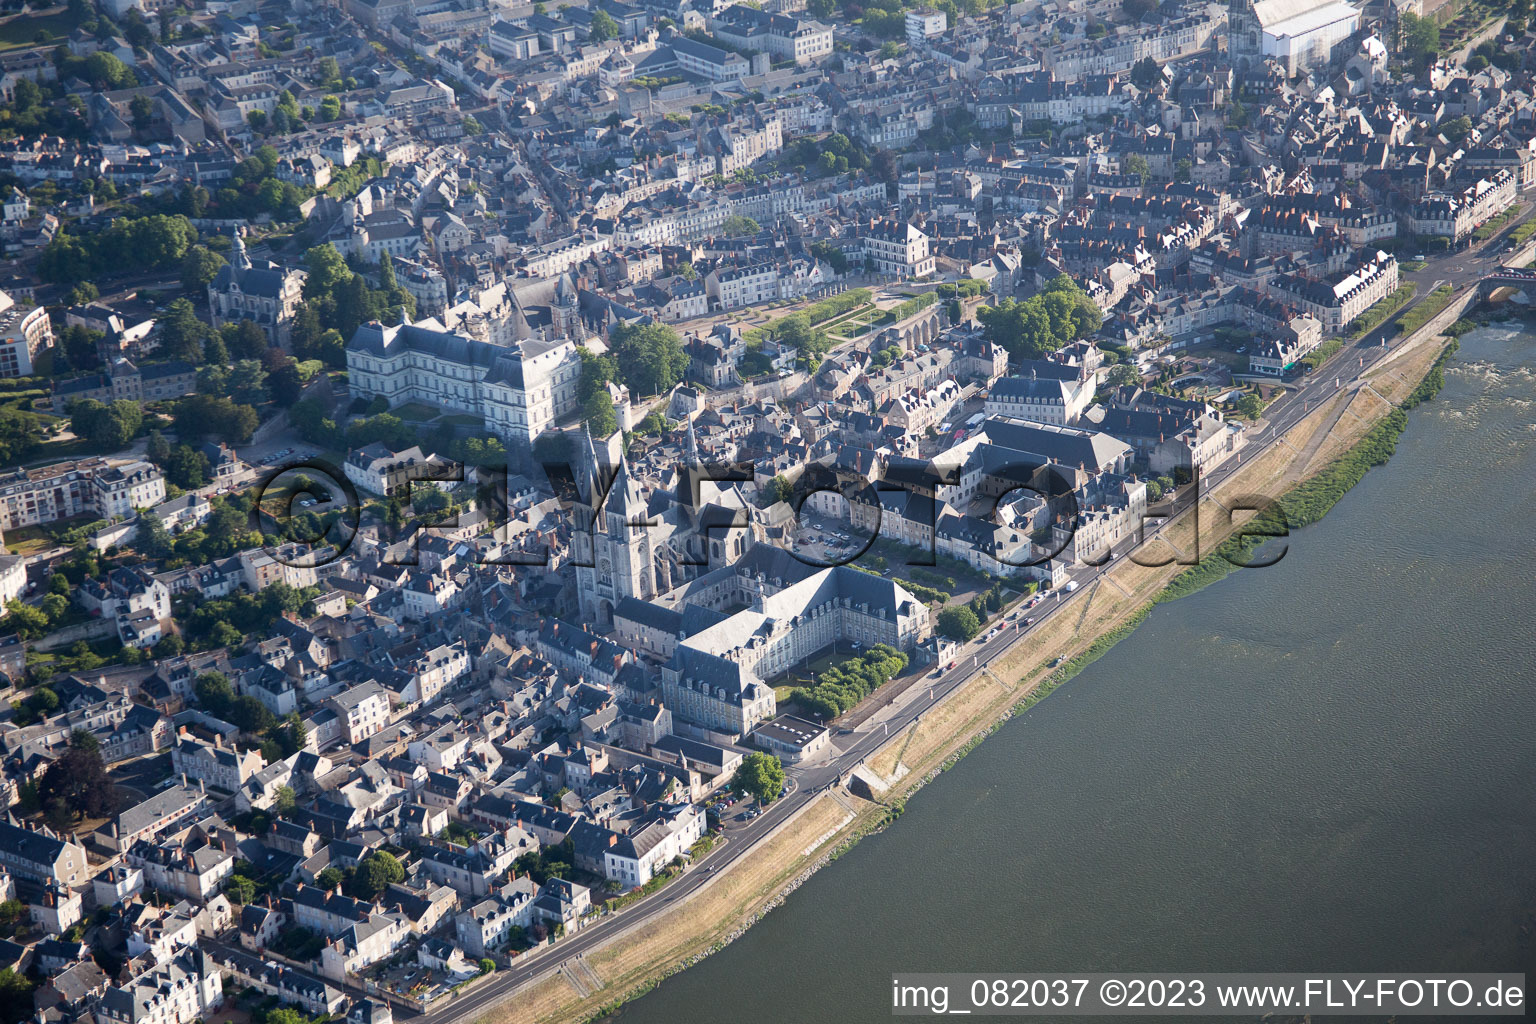 Blois dans le département Loir et Cher, France hors des airs